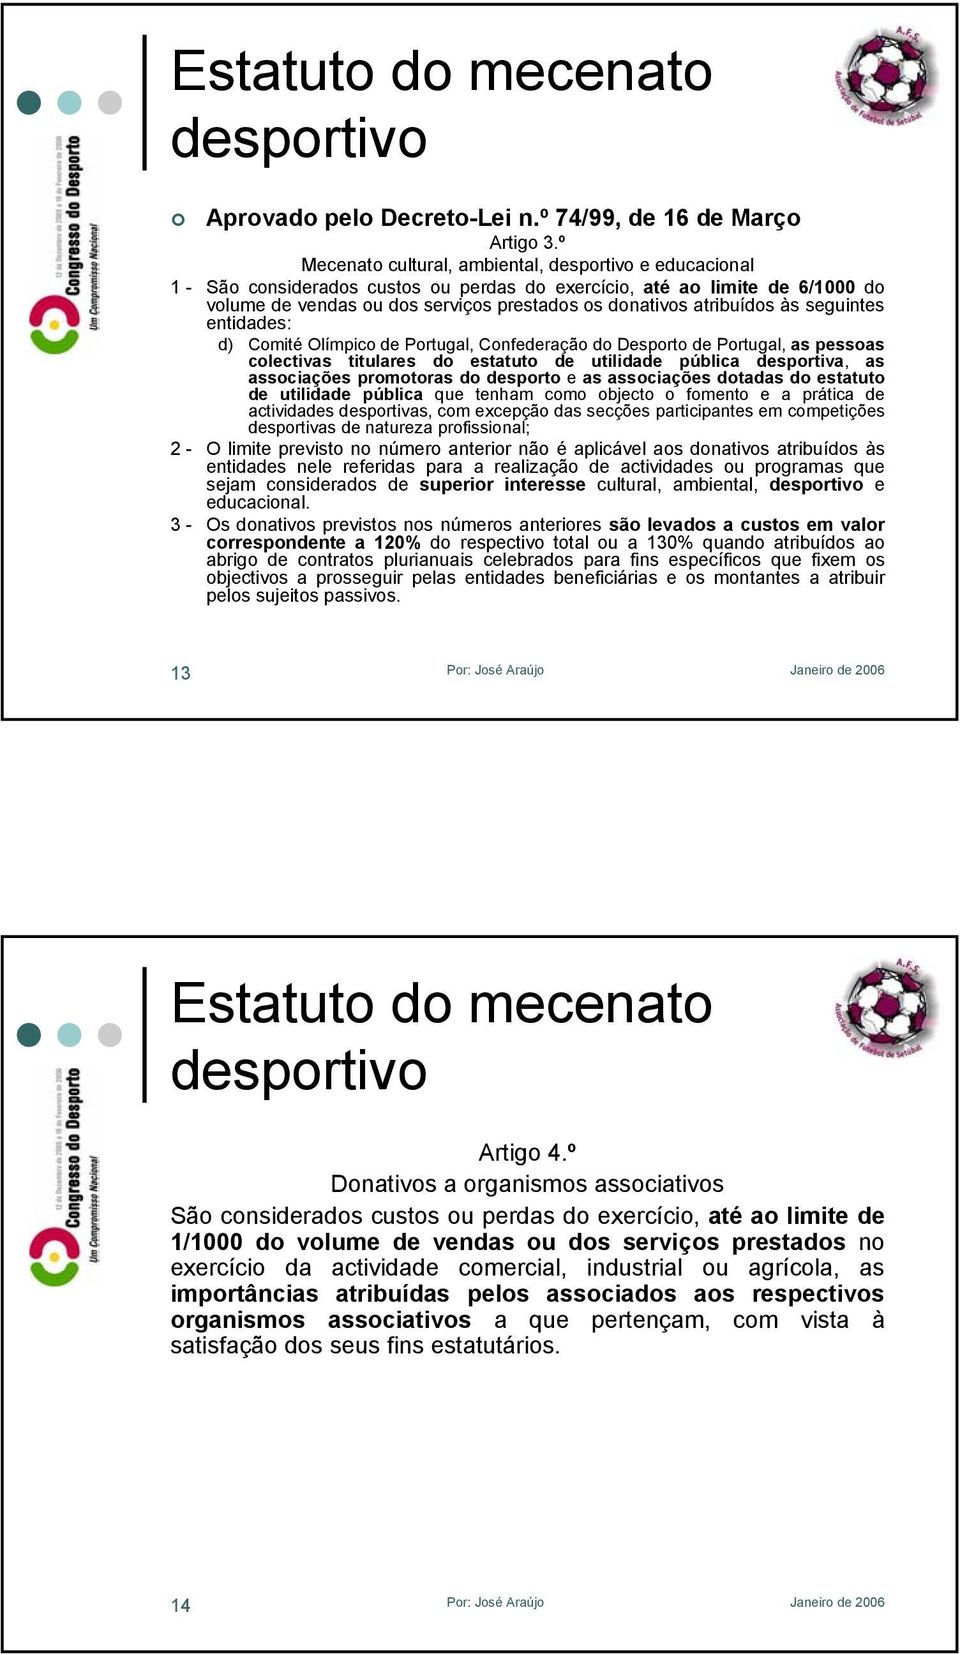 atribuídos às seguintes entidades: d) Comité Olímpico de Portugal, Confederação do Desporto de Portugal, as pessoas colectivas titulares do estatuto de utilidade pública desportiva, as associações